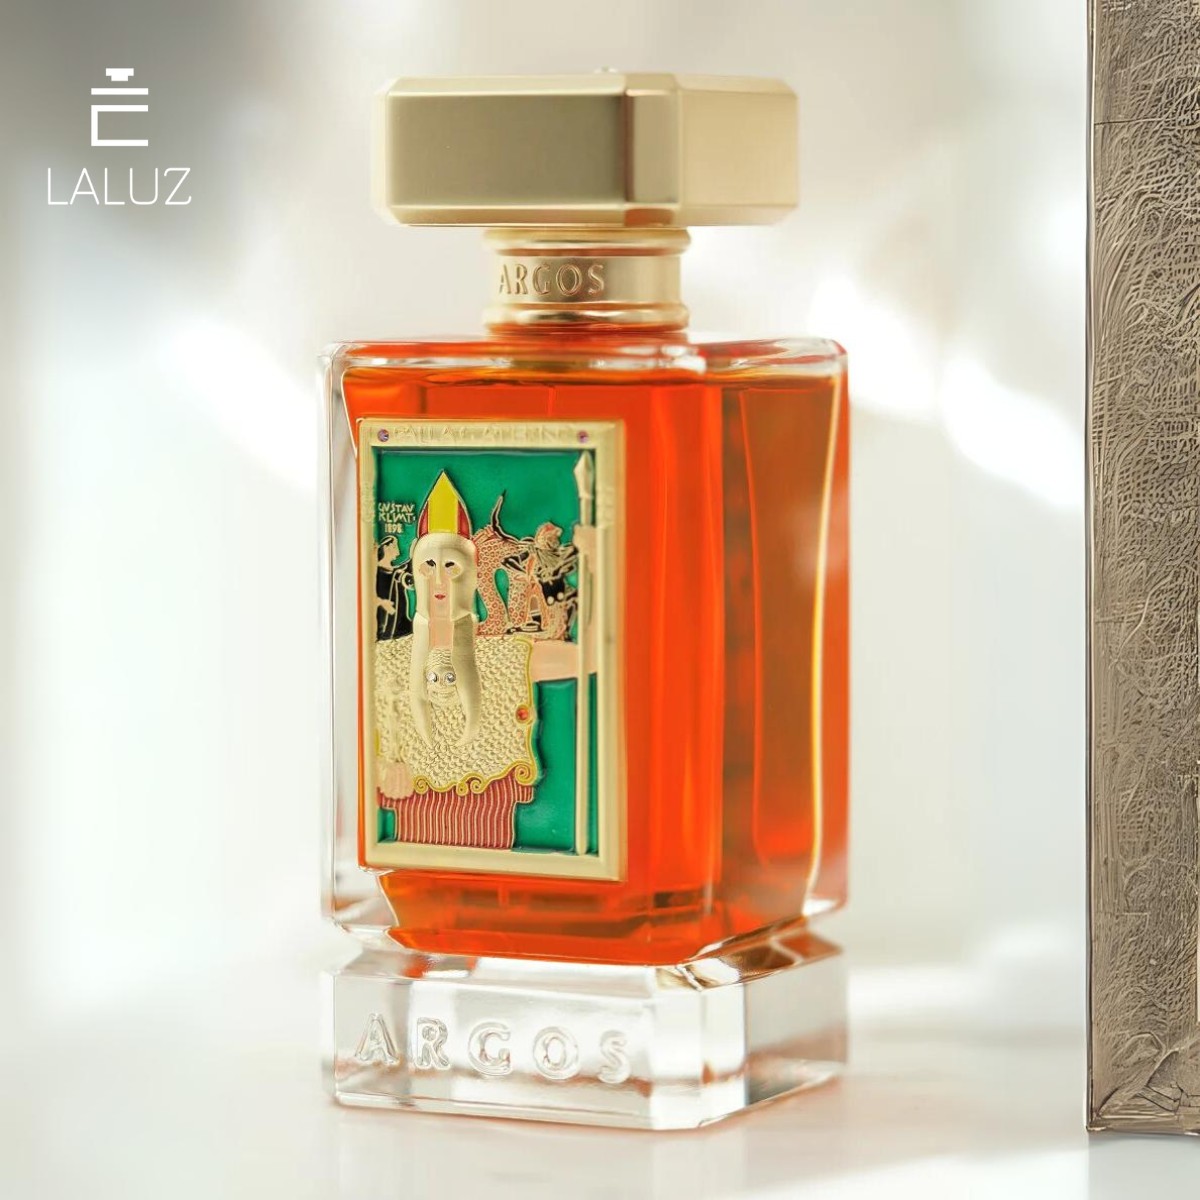 Argos Fragrances Pallas Athene perfume với hương thơm vừa quyến rũ, vừa quyền lực